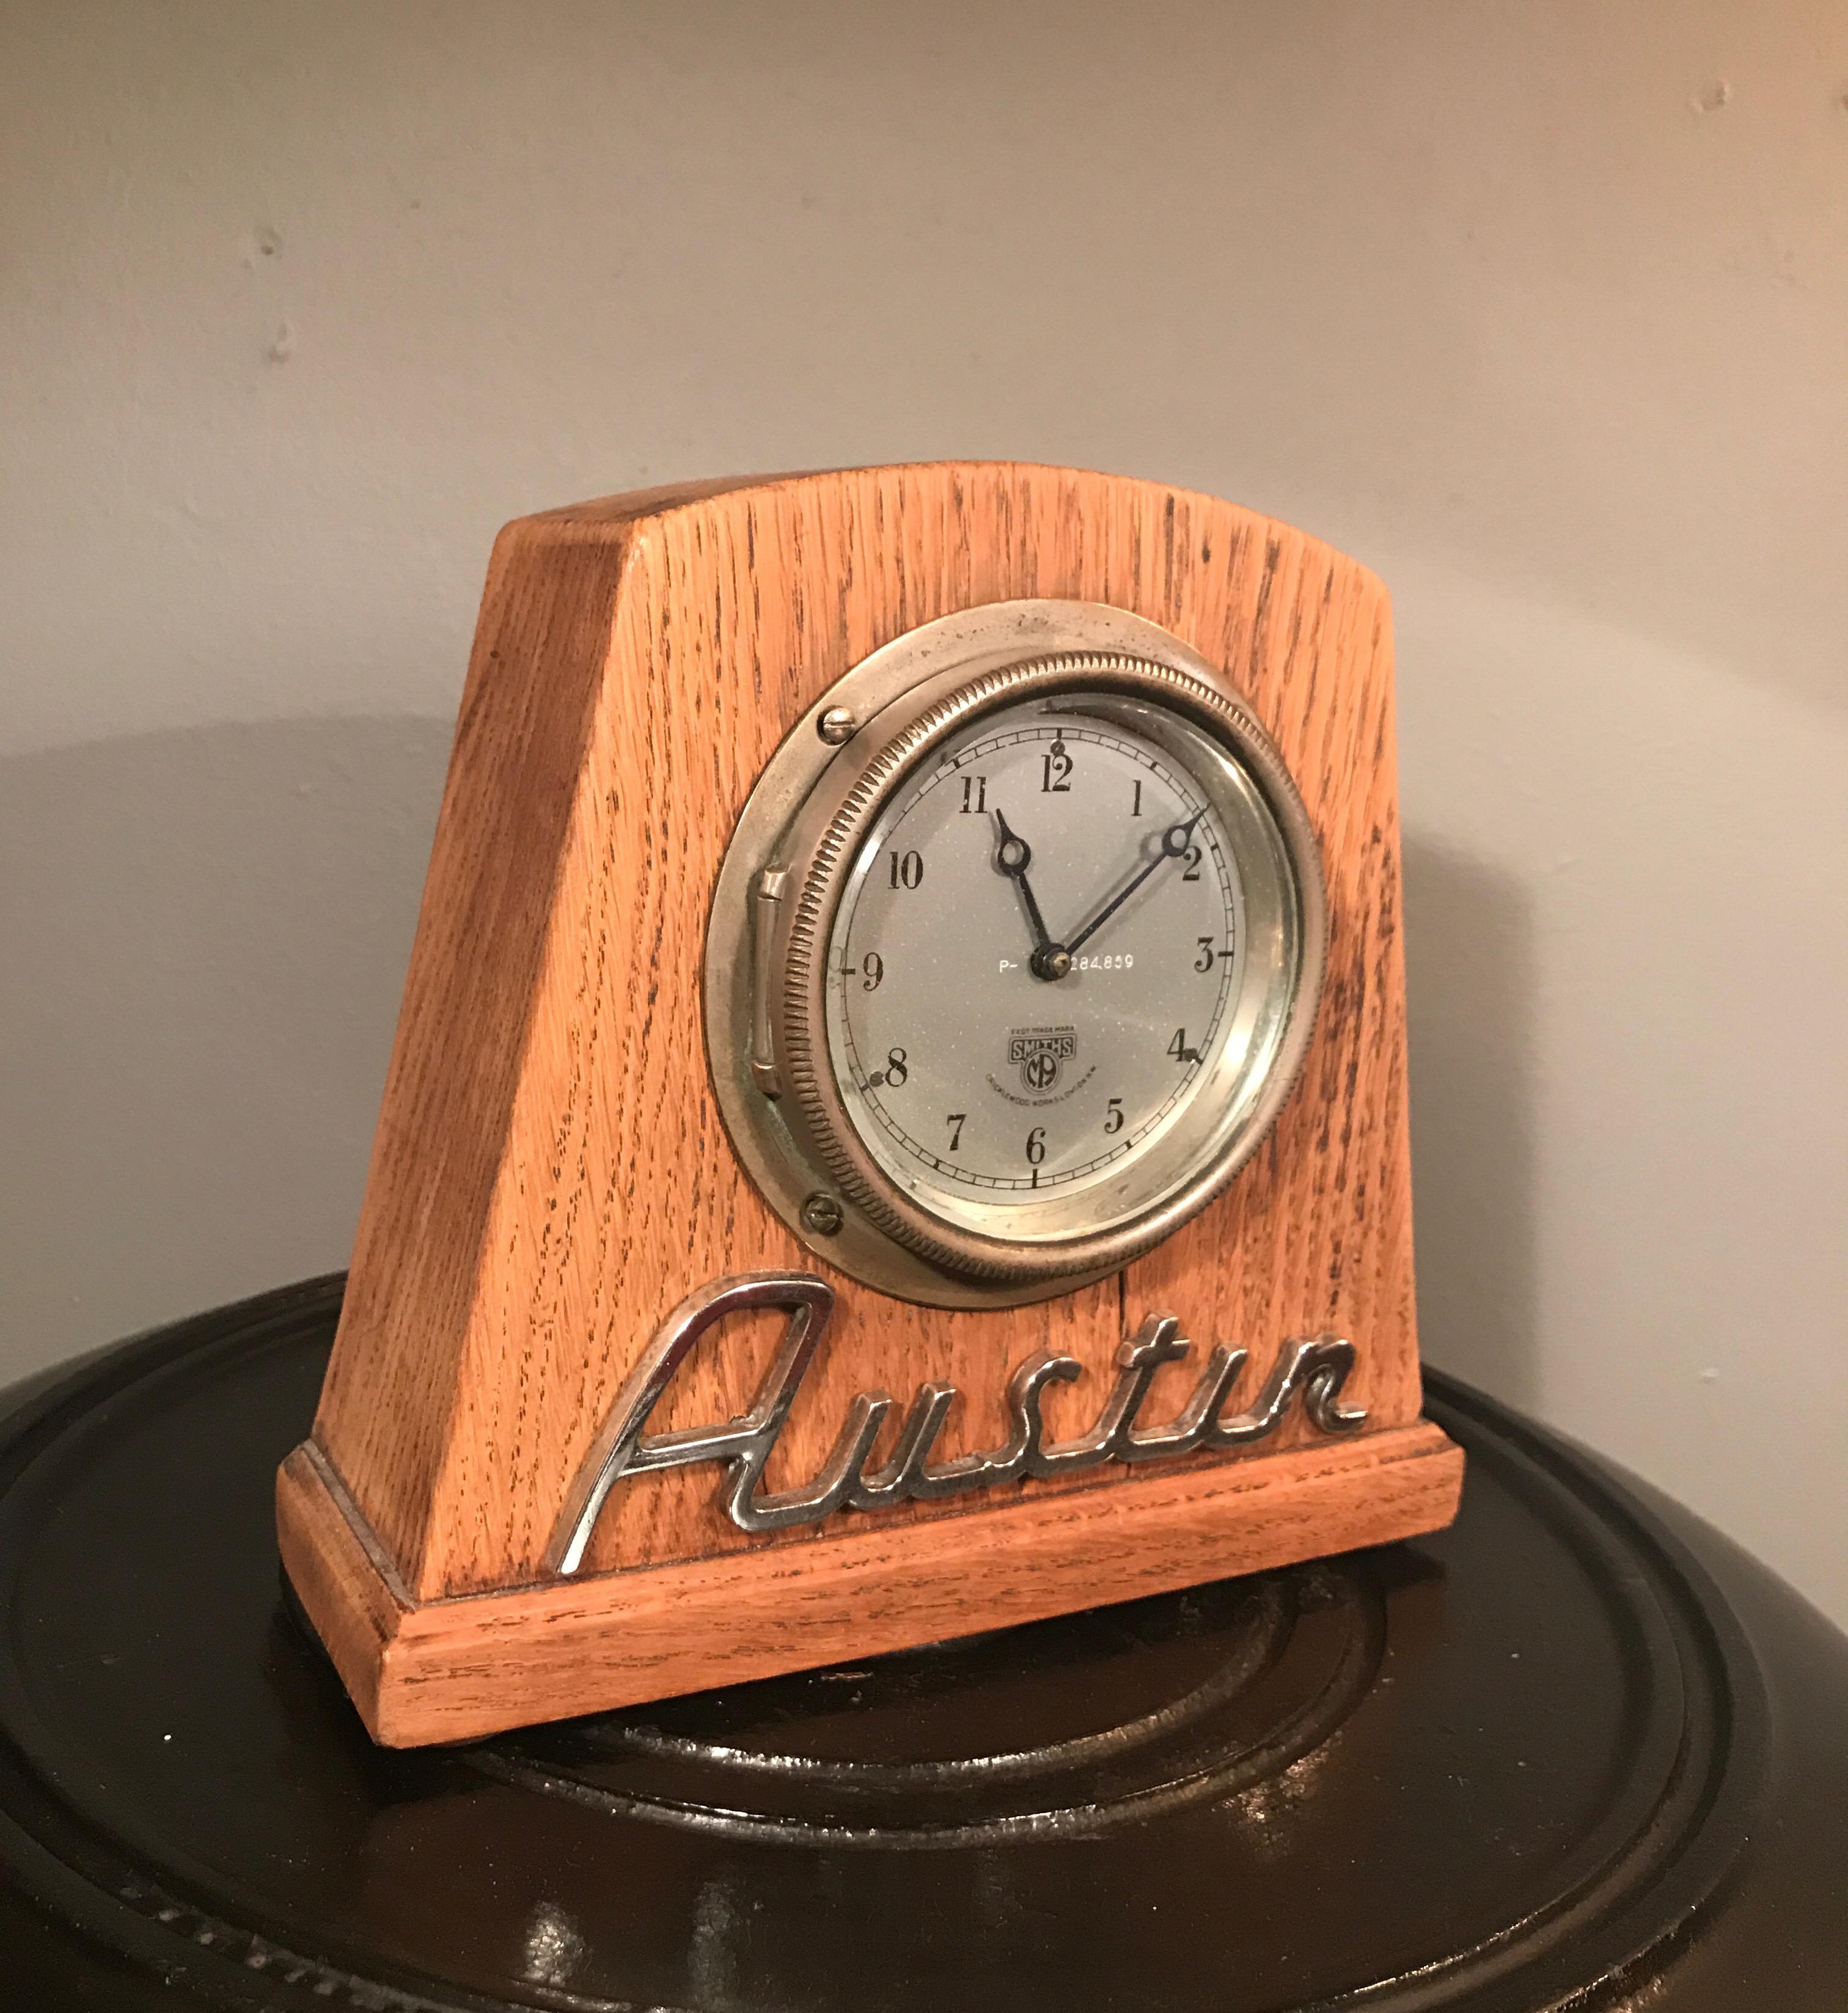 Vintage Auto-Uhr von Smiths of England aus den 1930er Jahren und wahrscheinlich von einem Austin
In funktionsfähigem Zustand und immer noch mit dem Original-Anleitung Etikett auf der Innenseite
Montiert in einem Eichengehäuse
Schönes Stück